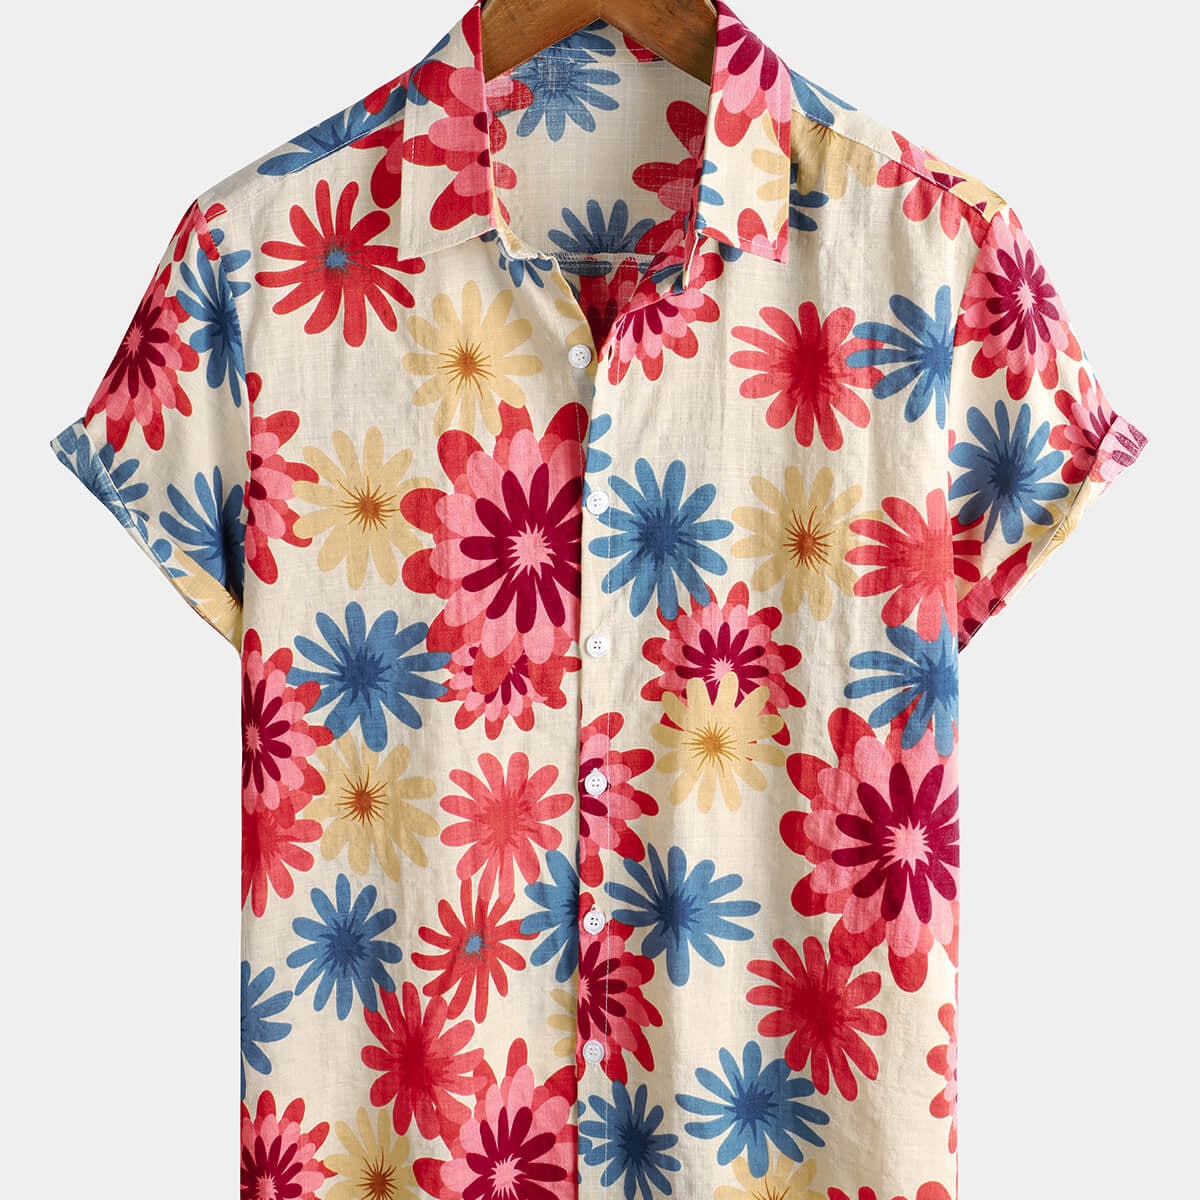 Chemise hawaïenne boutonnée à manches courtes pour hommes